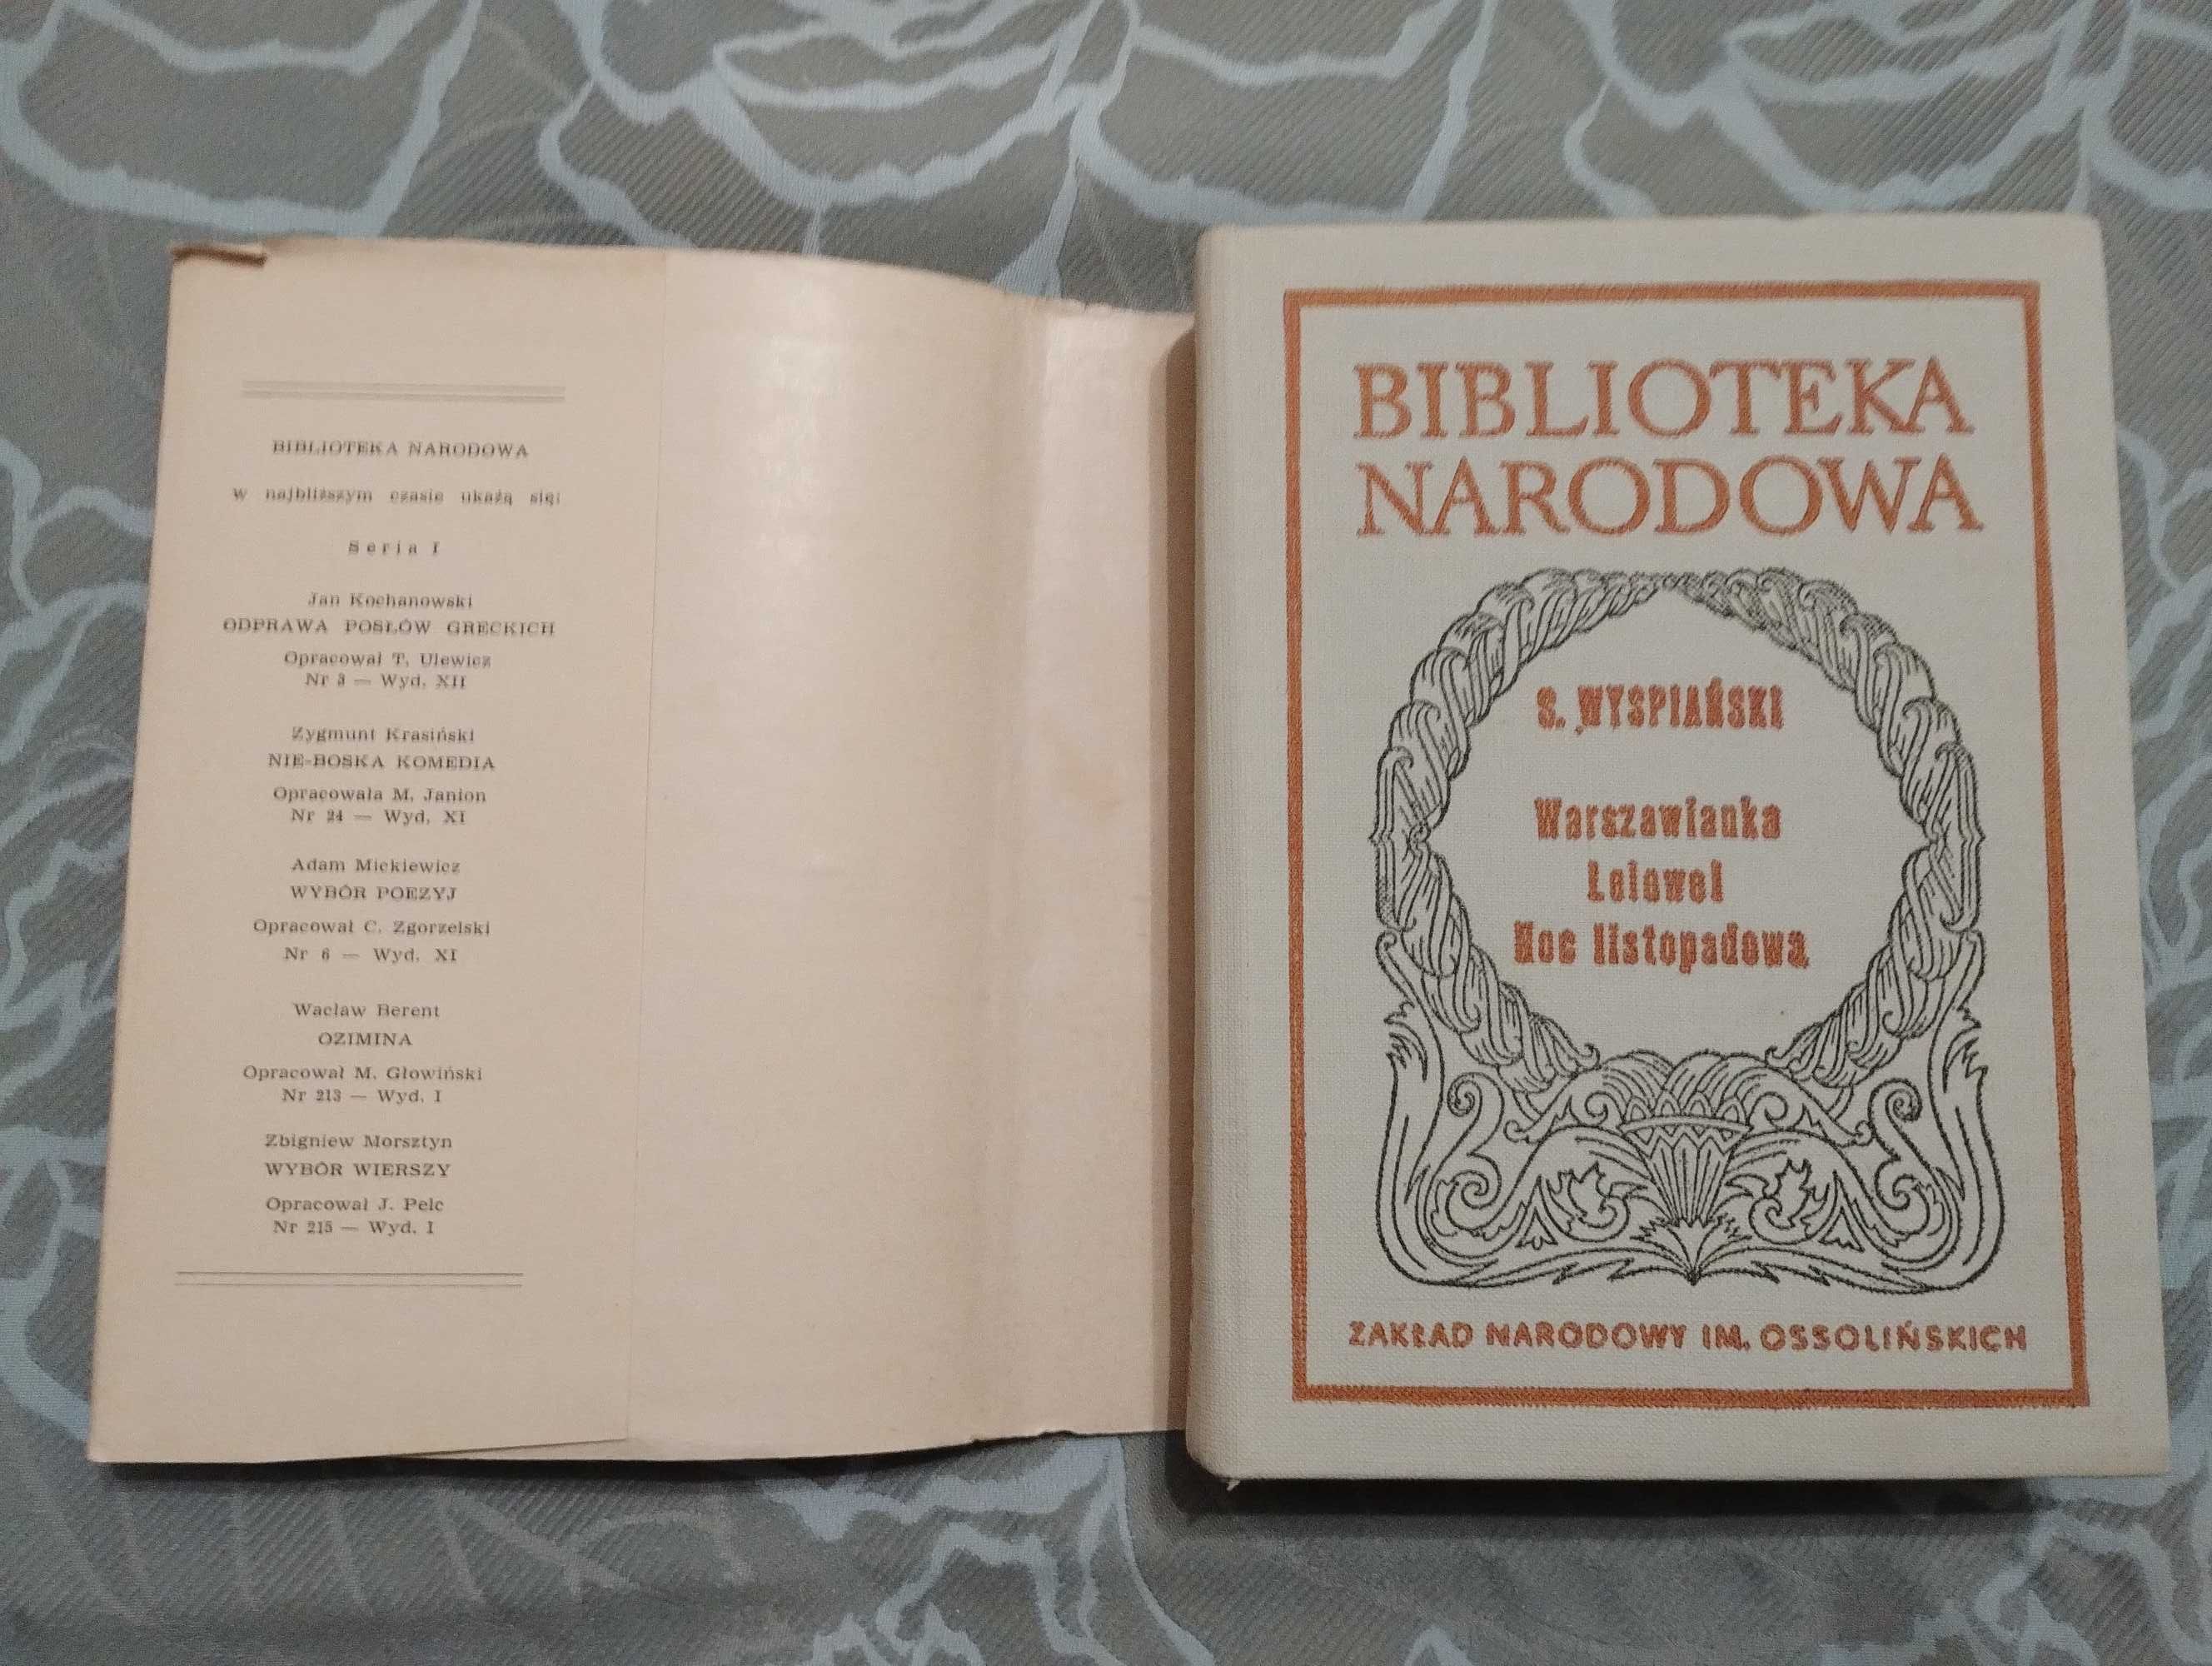 Книга Stanislaw Wyspianski "Warszawianka Lelewel Noc Listopadowa 1974